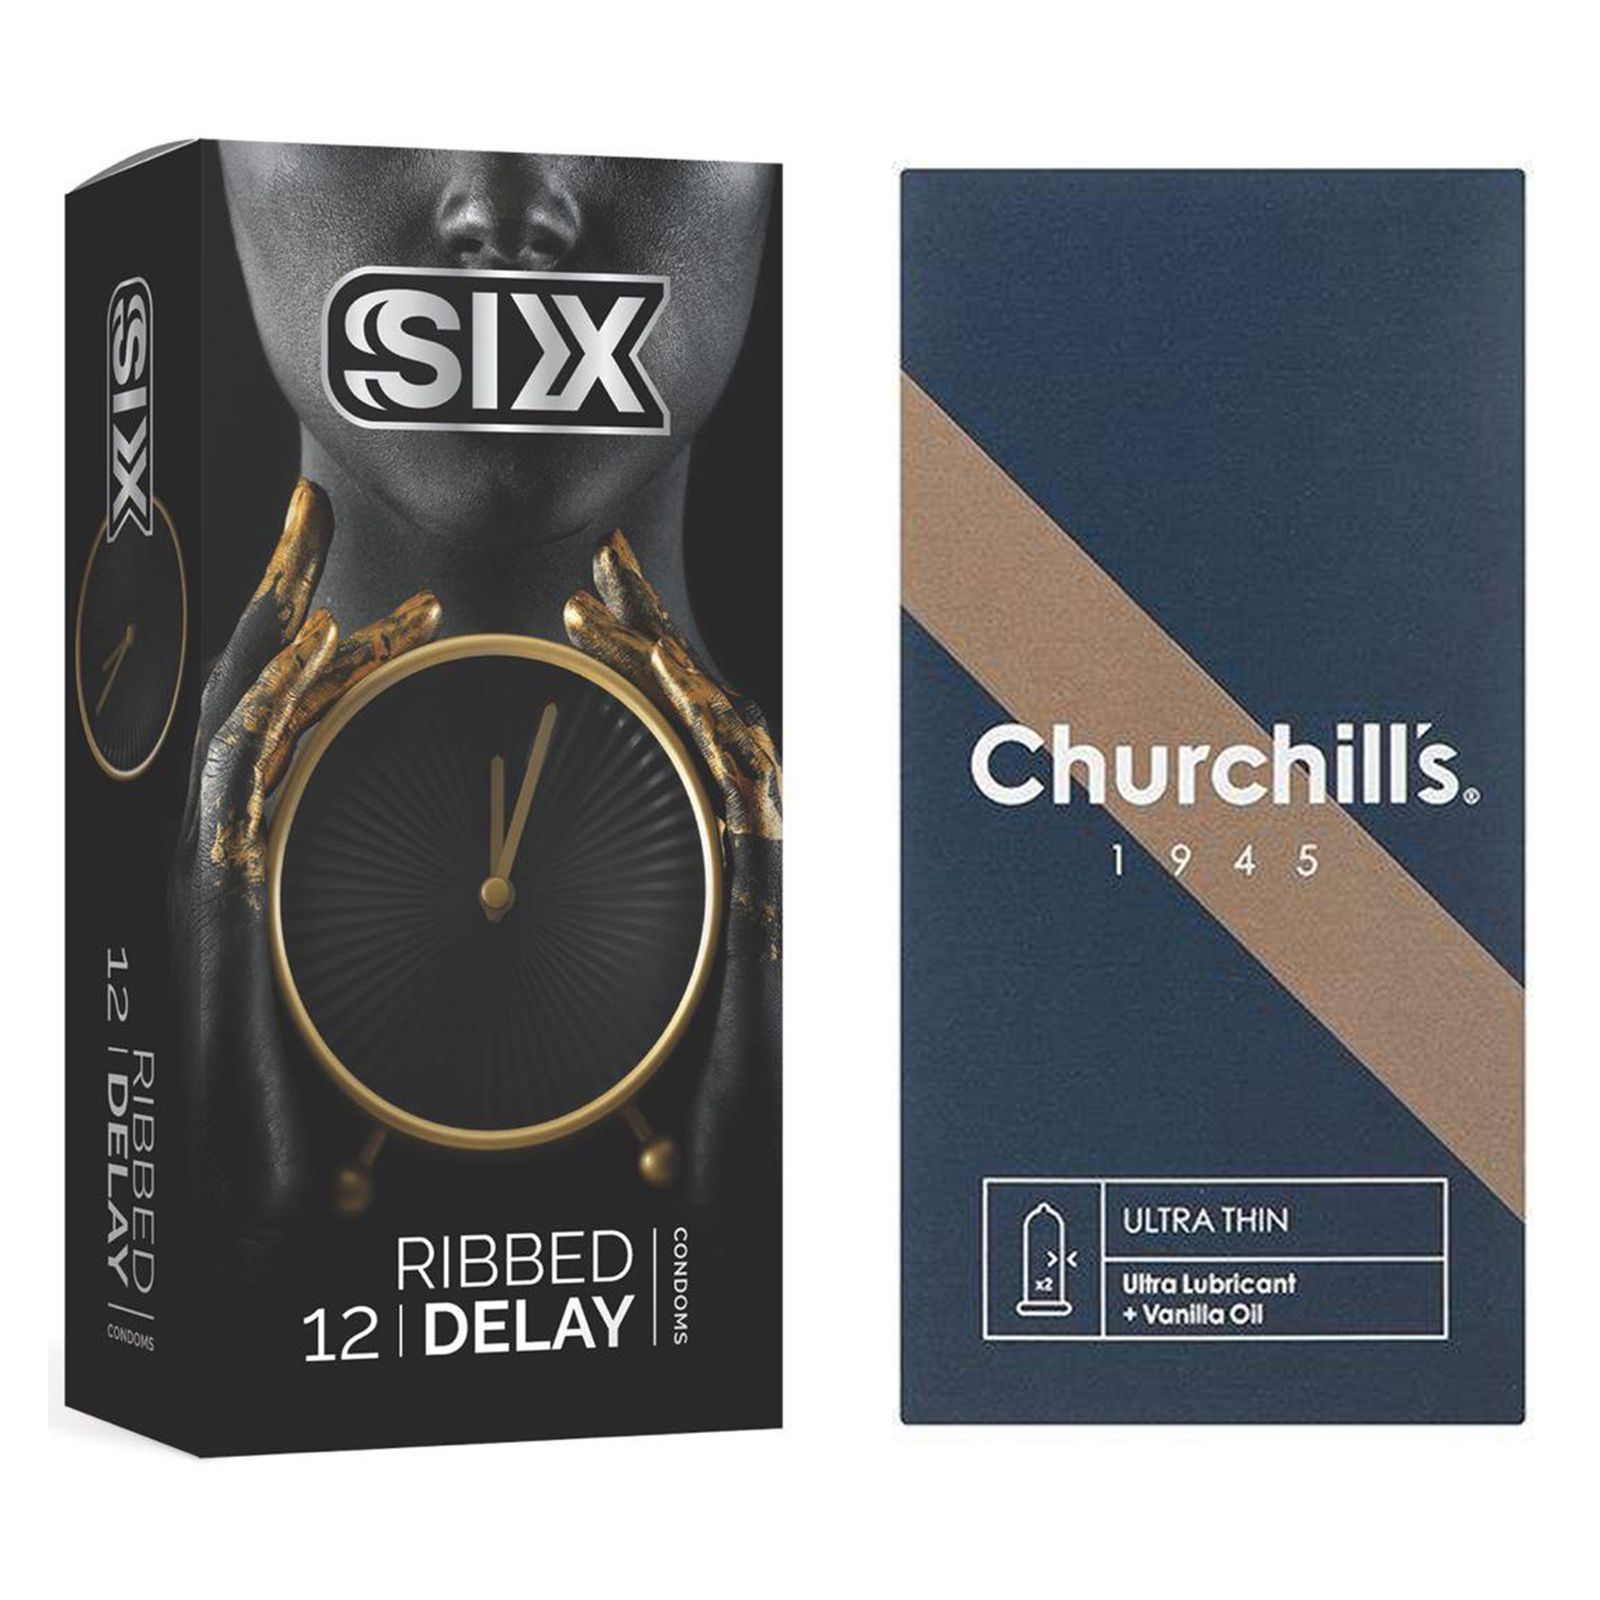 کاندوم چرچیلز مدل Ultra Thin بسته 12 عددی به همراه کاندوم سیکس مدل تاخیری شیاردار بسته 12 عددی -  - 2